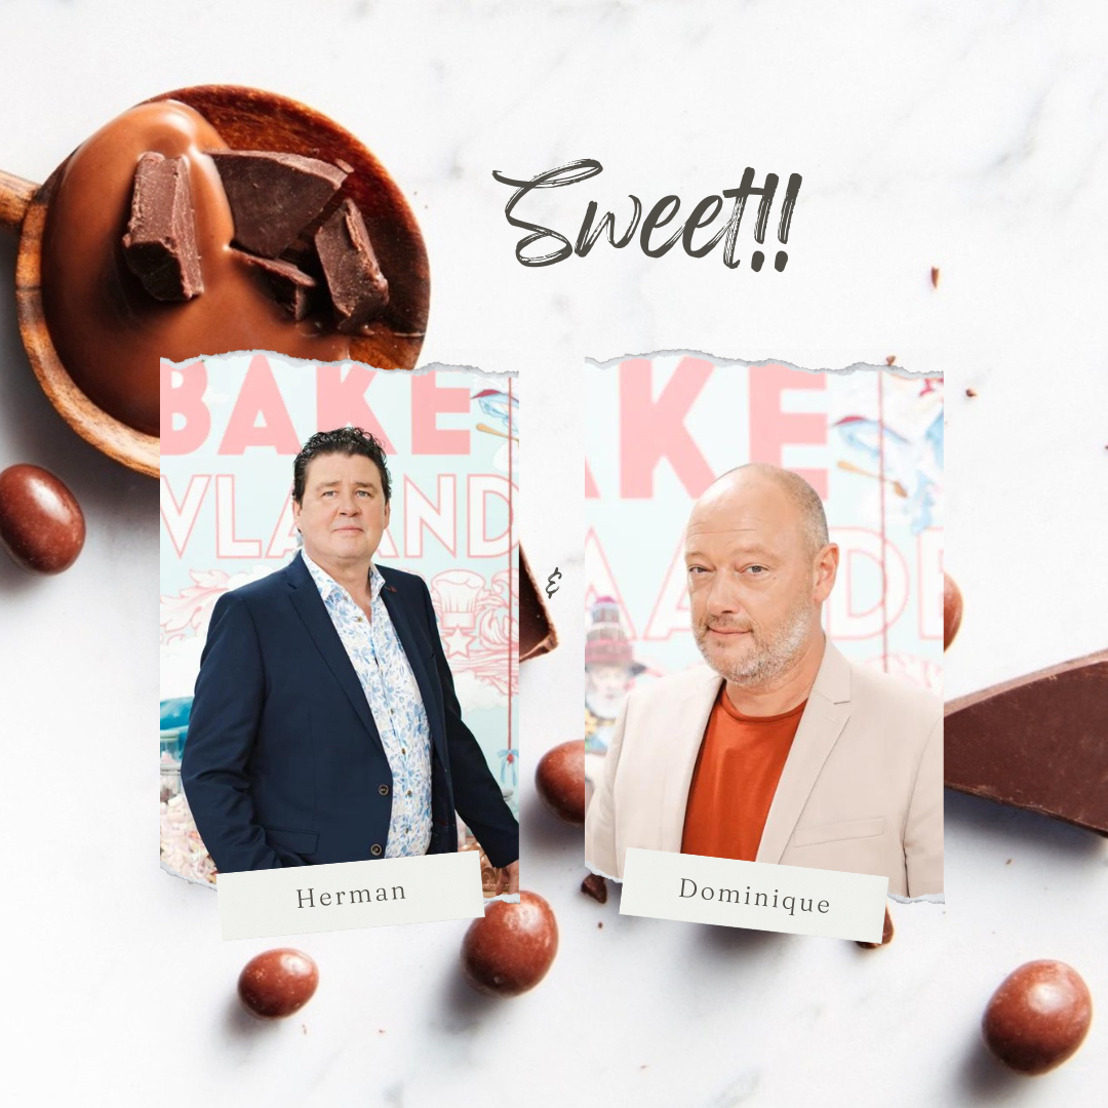 Bake Off Vlaanderen juryleden Dominique Persoone en Herman Van Dender bekroond tot ‘Chocolatier of the Year’